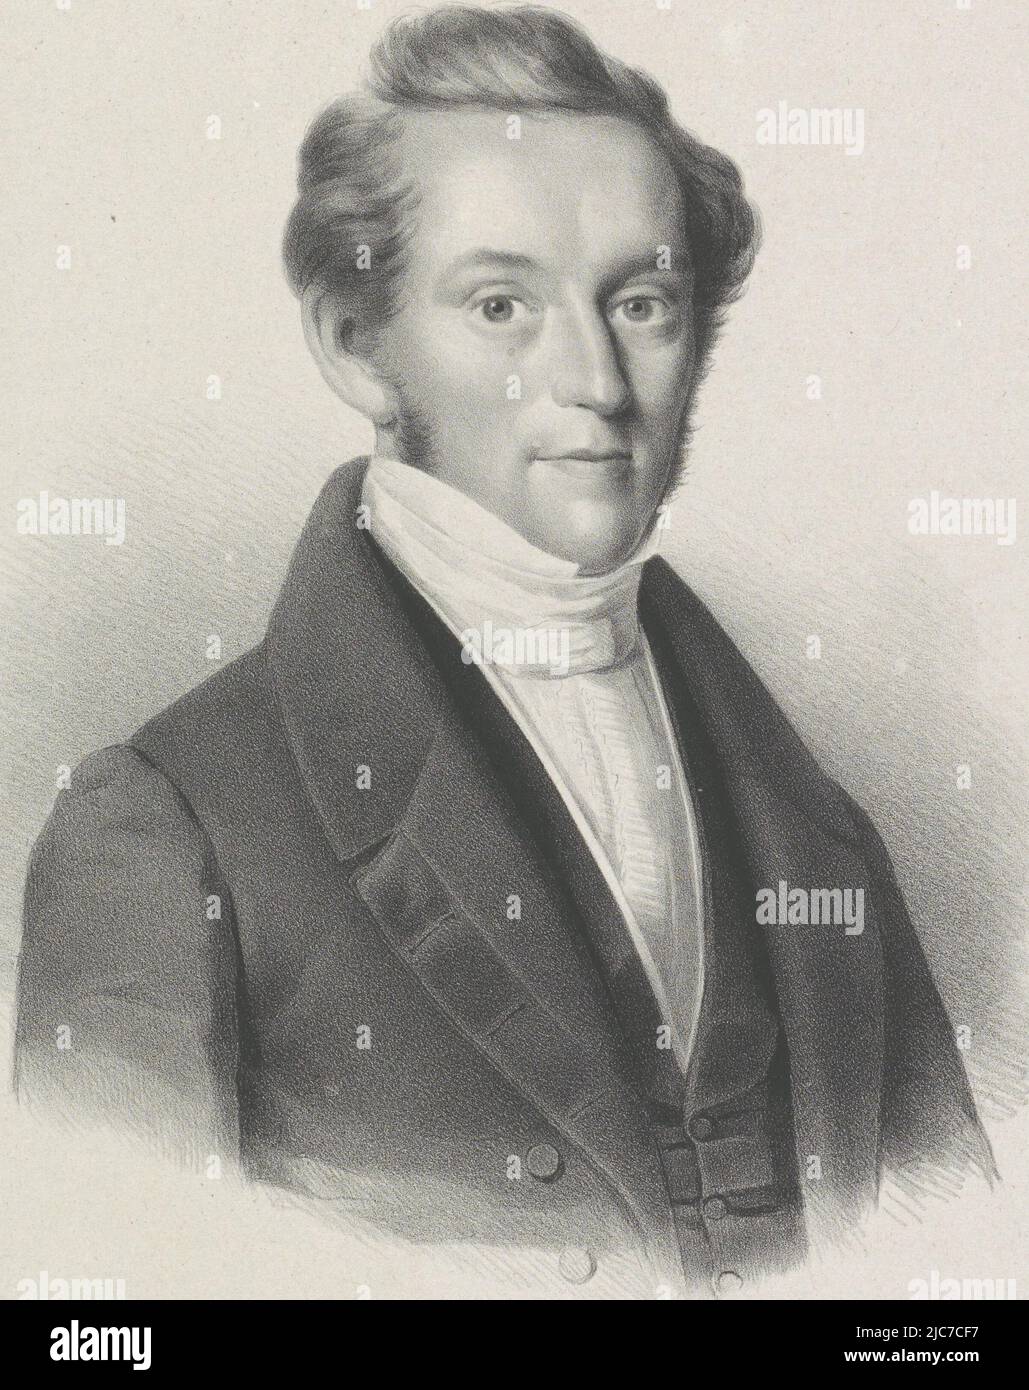 Portrait d'Axel Lourents Land, imprimeur: Anonyme, imprimeur: Hilmar Johannes Backer, (mentionné sur l'objet), Dordrecht, 1822 - 1845, papier, h 440 mm × l 305 mm Banque D'Images